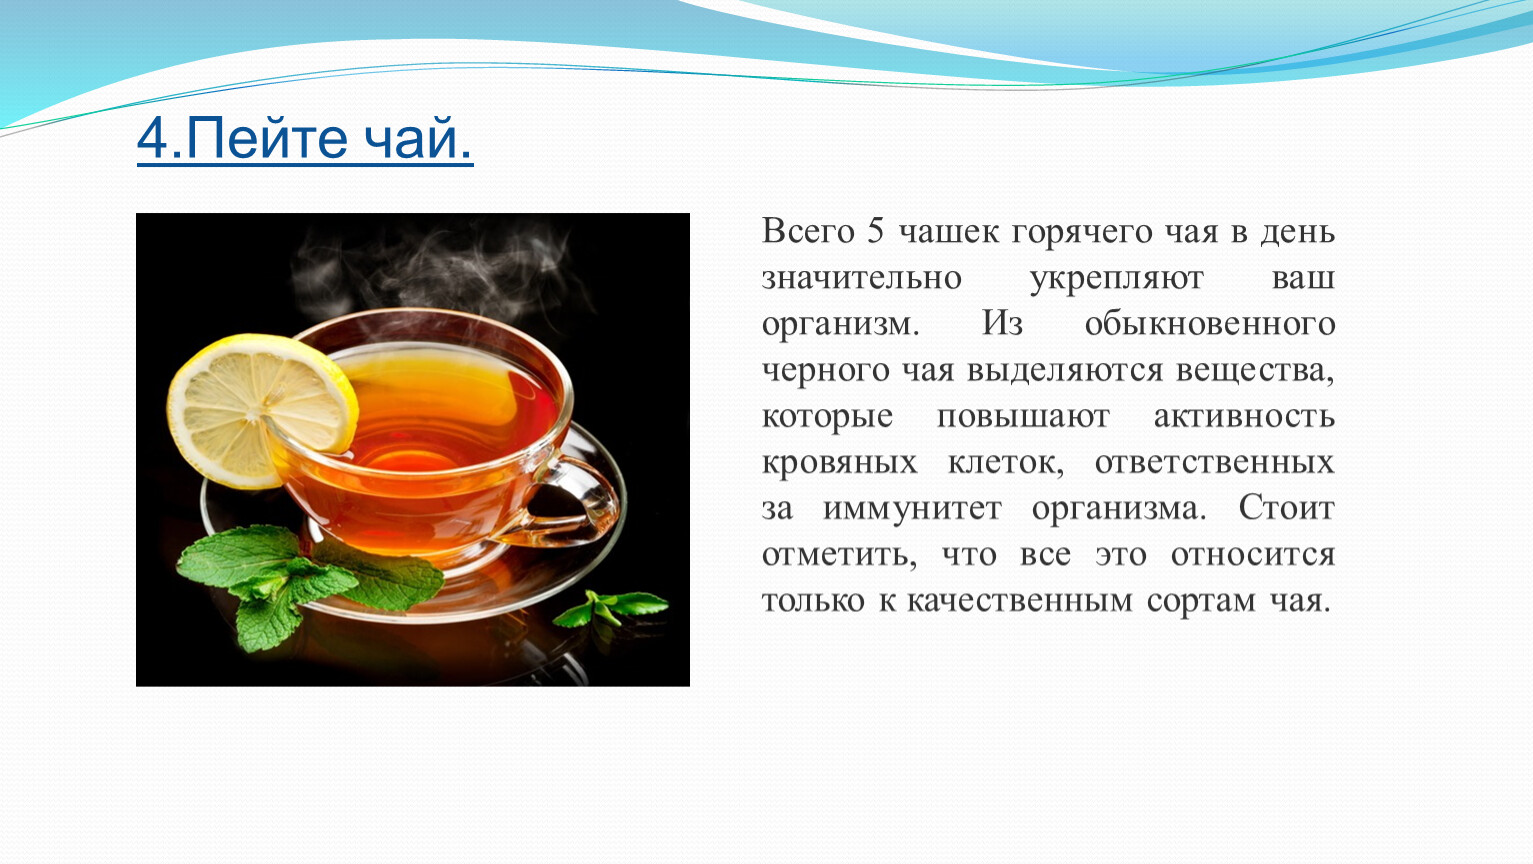 Пьют ли горячий чай при температуре. Чай картинки для презентации. Температура кружки с горячим чаем. С чем можно сравнить горячий чай. Горячий чай Оби.